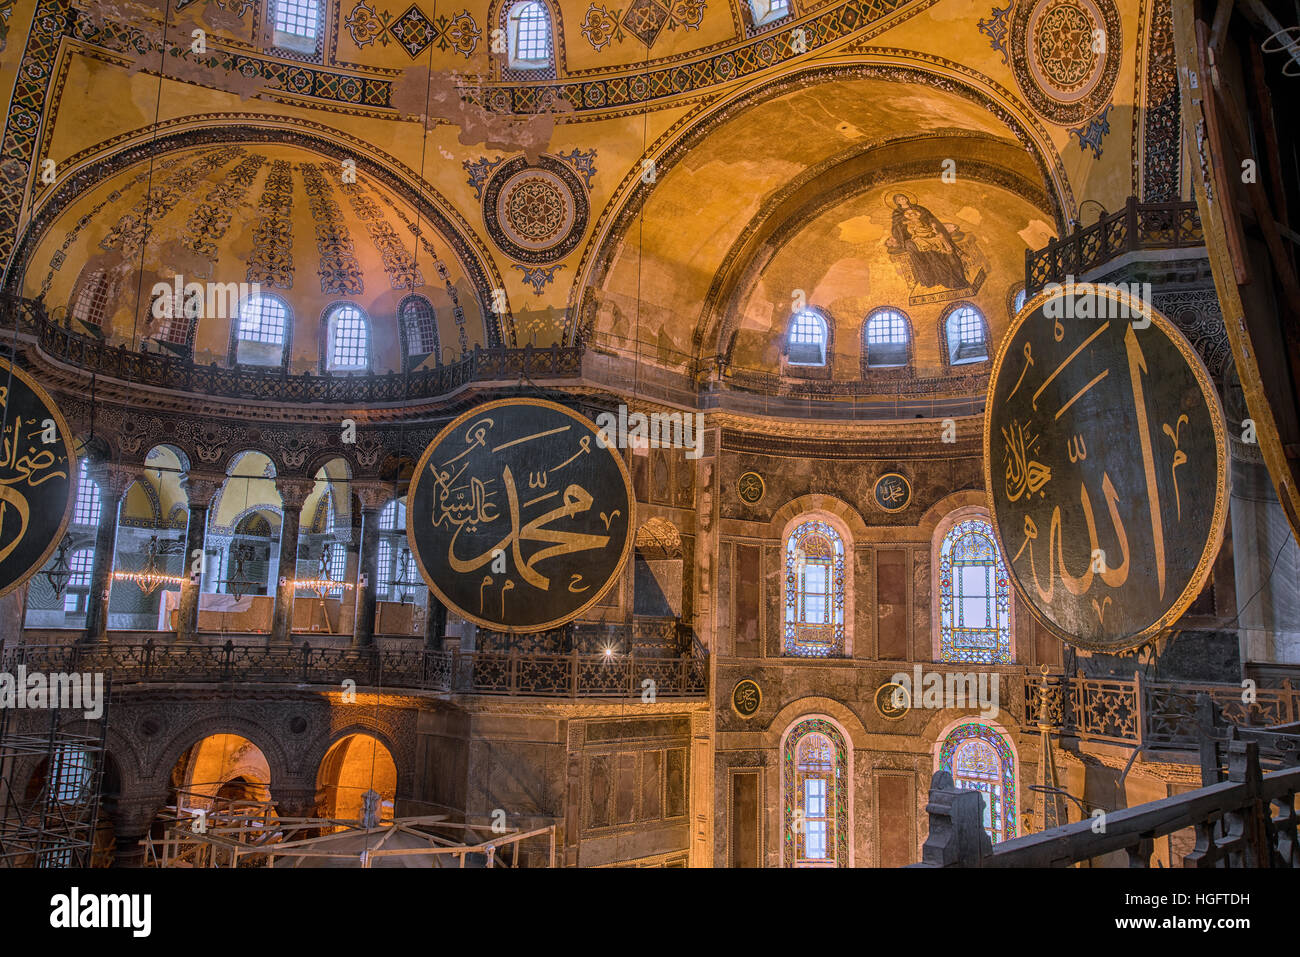 Hagia Sophia interno in Istanbul, Turchia, architettura bizantina, punto di riferimento della città e architectural wonder world Foto Stock